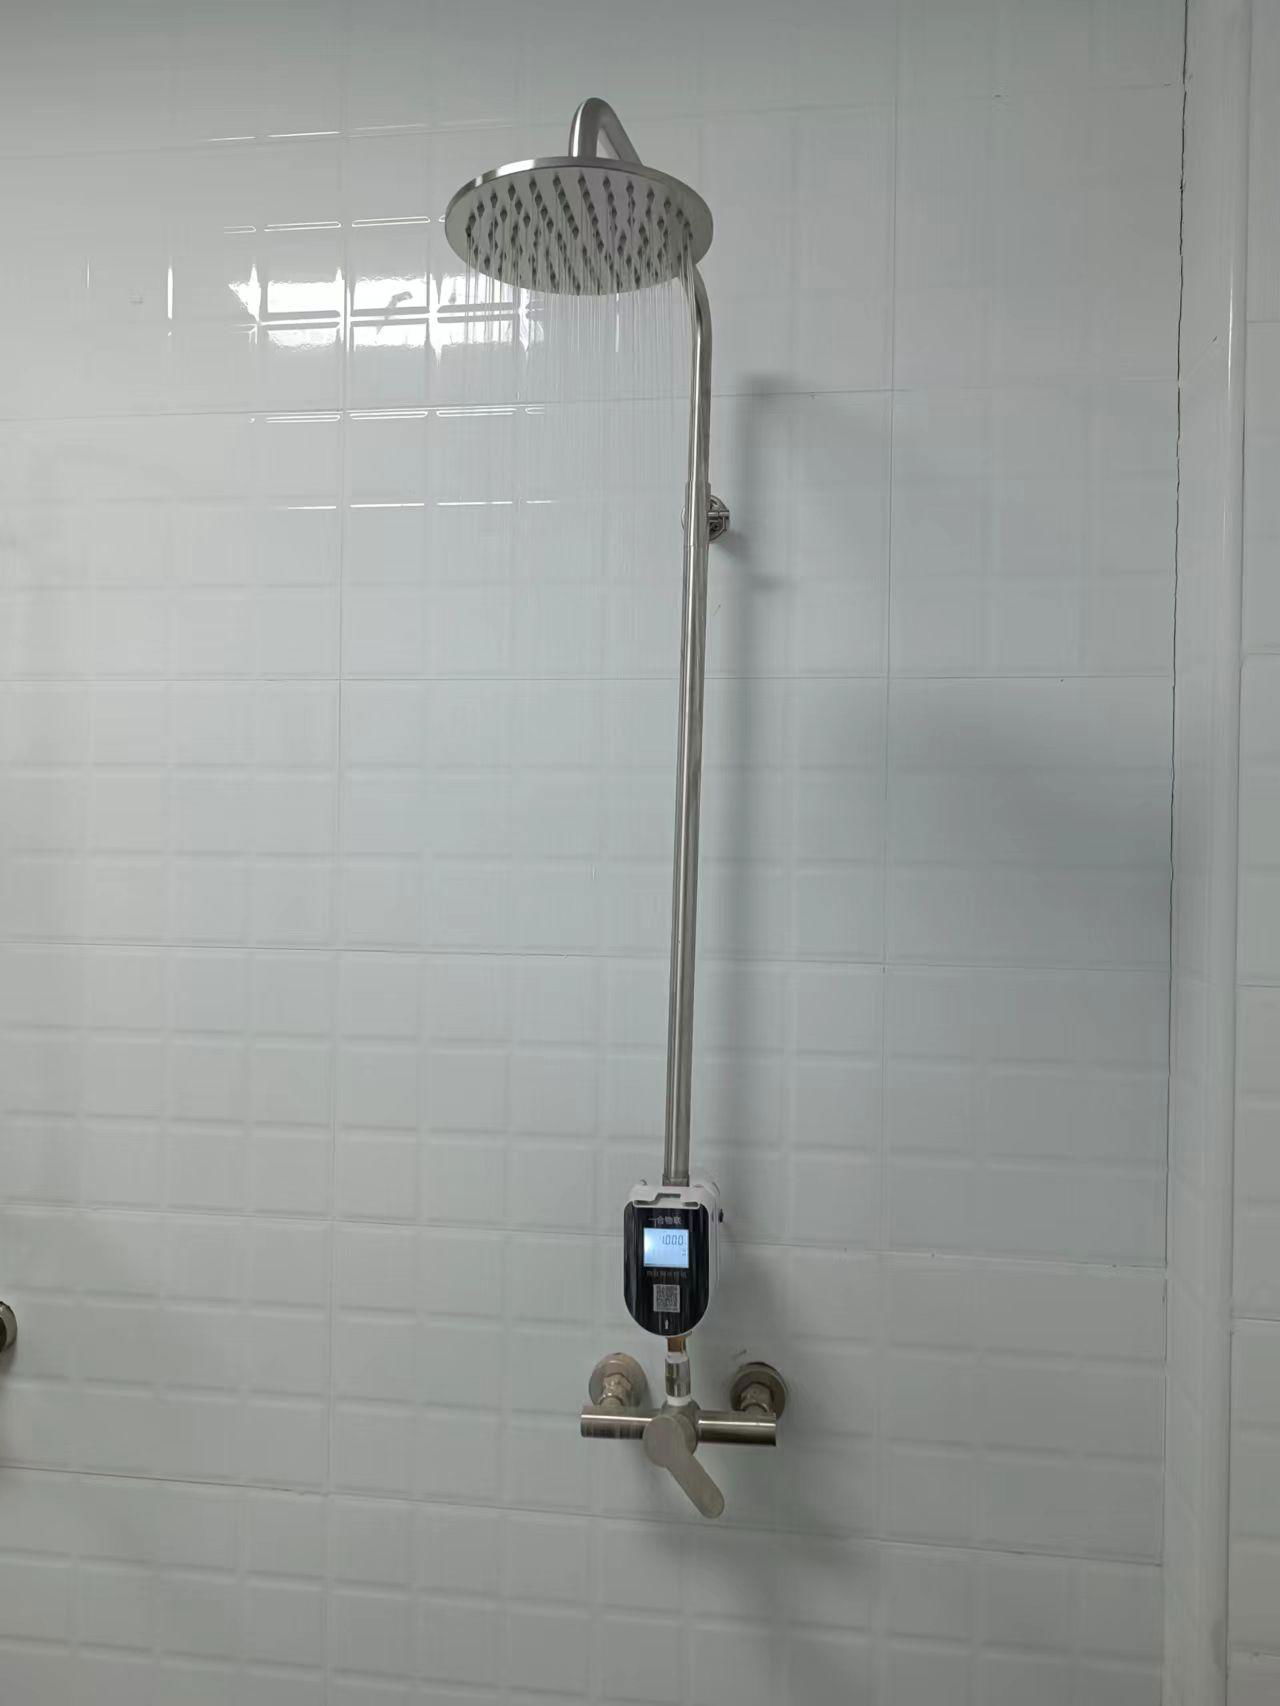 浴室刷卡掃碼節水系統 4